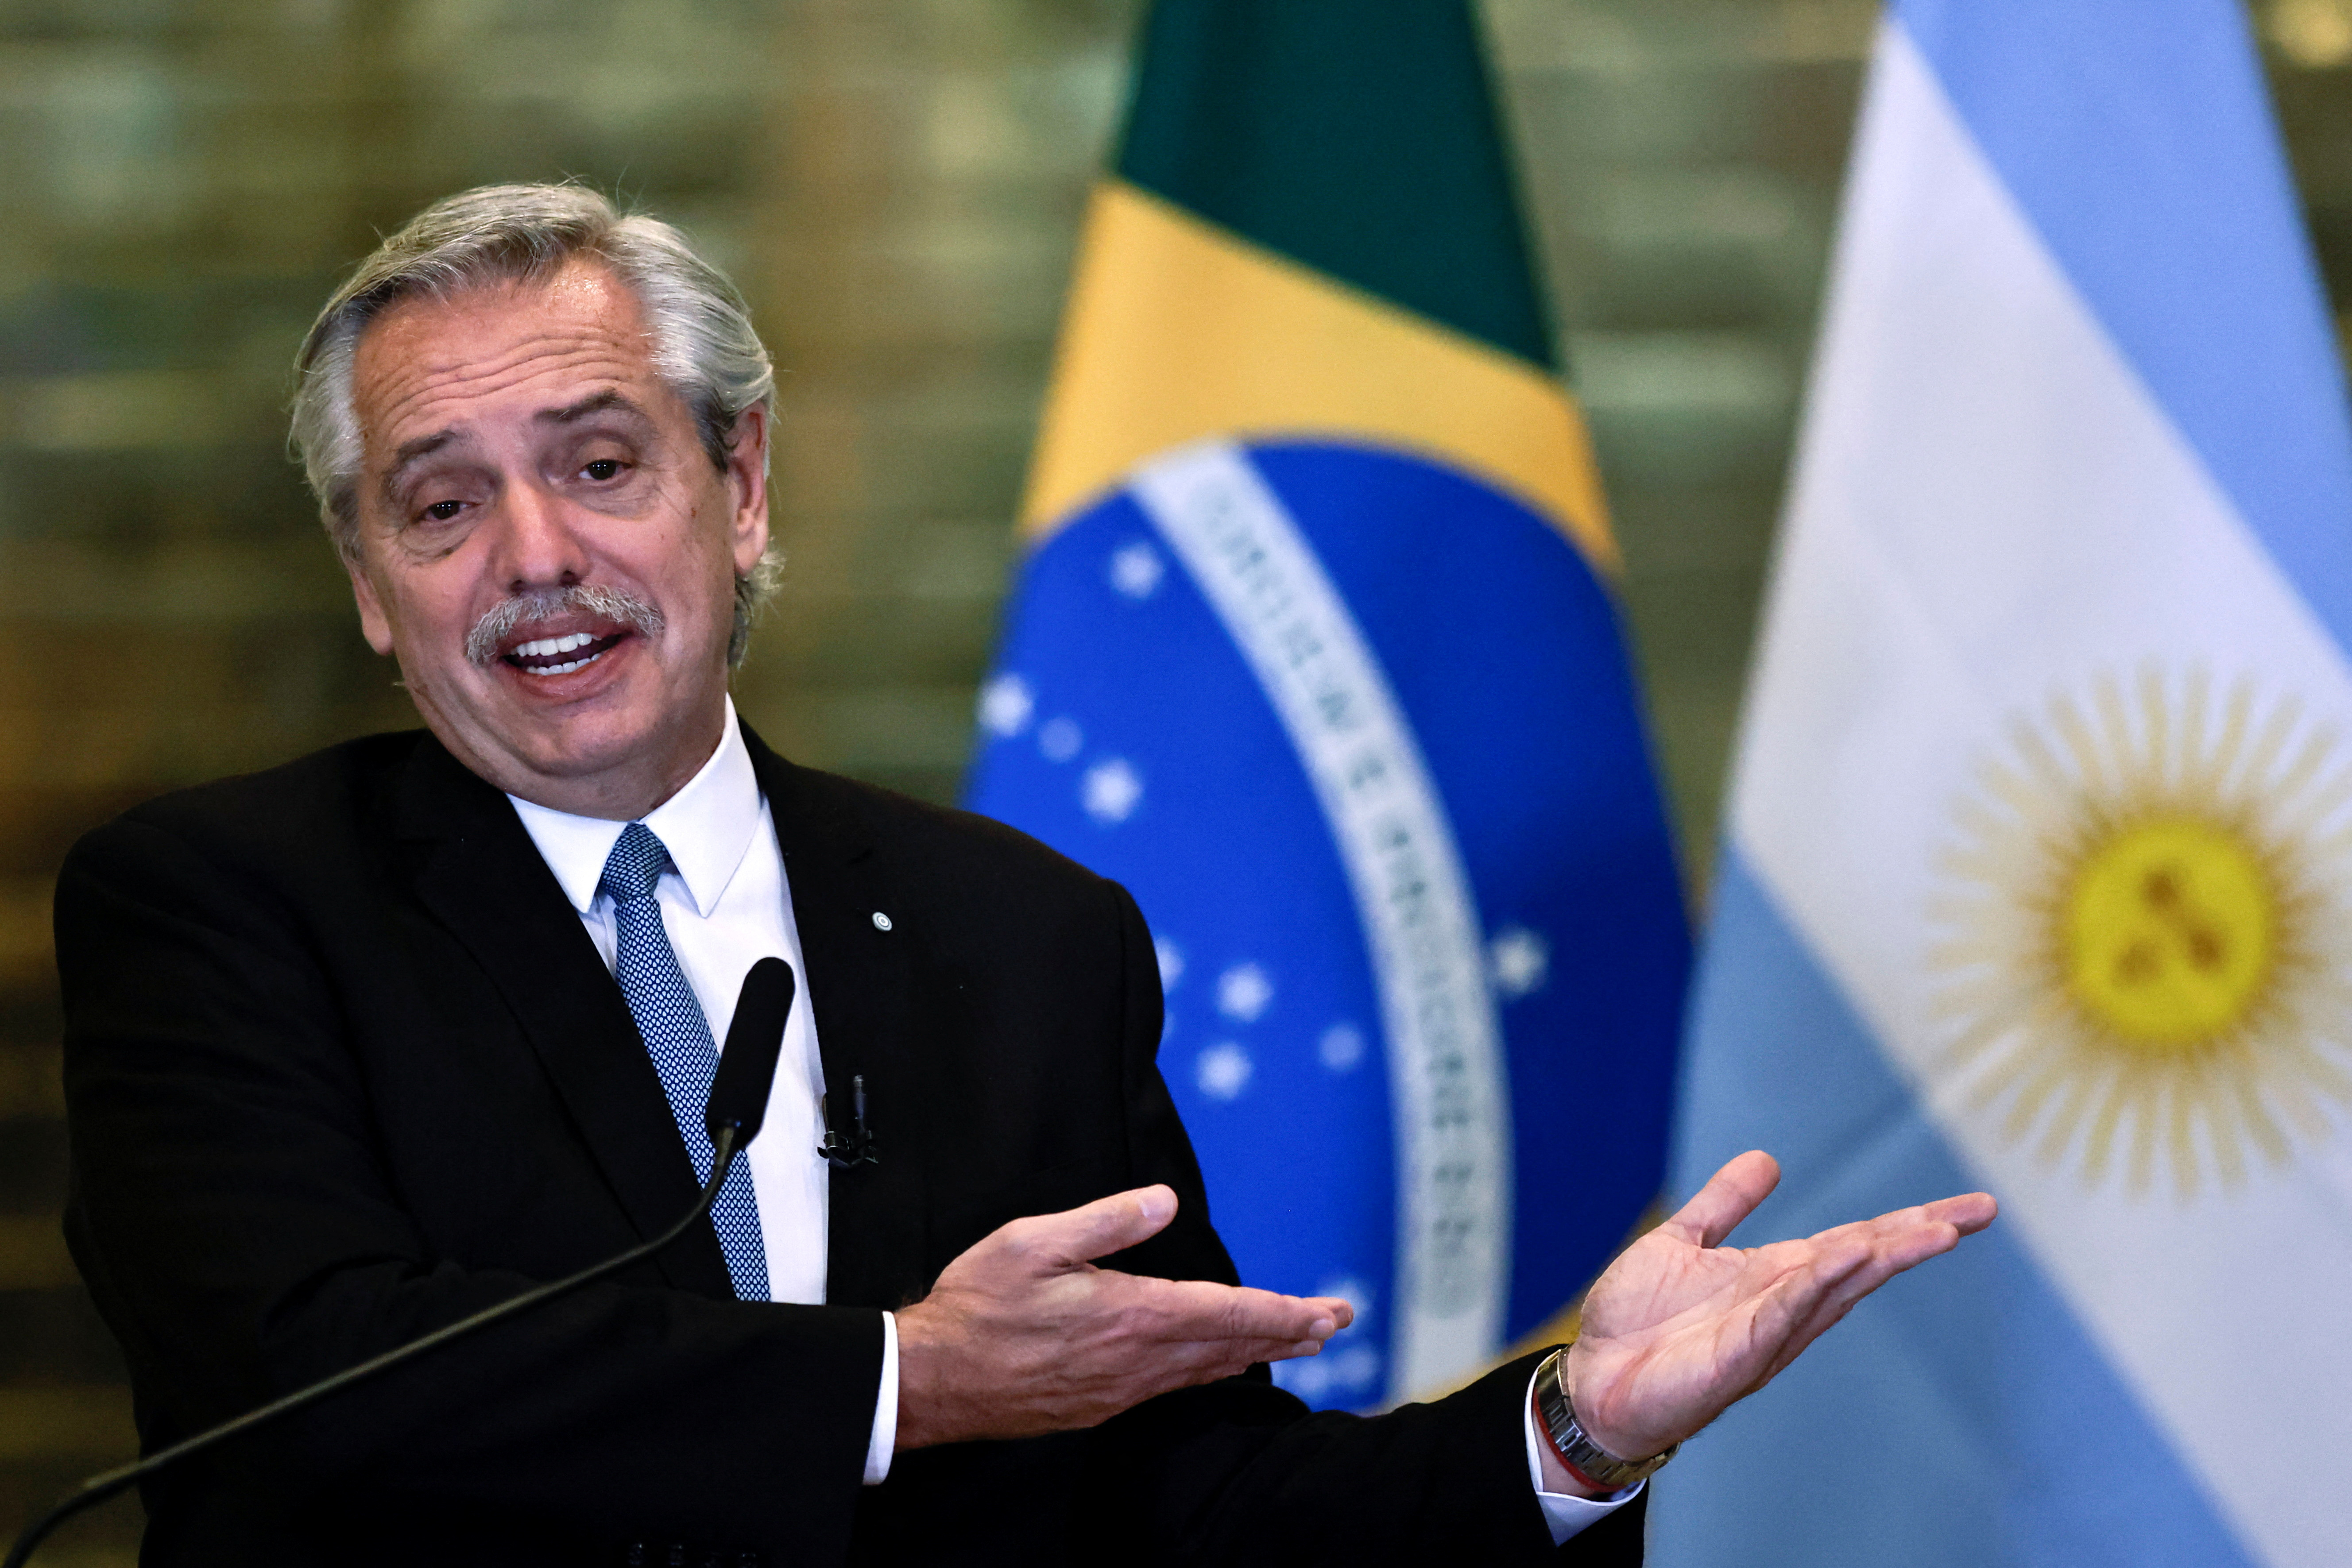 El Presidente considera que las PASO son el mejor mecanismo para dirimir las diferencias (REUTERS/Ueslei Marcelino)